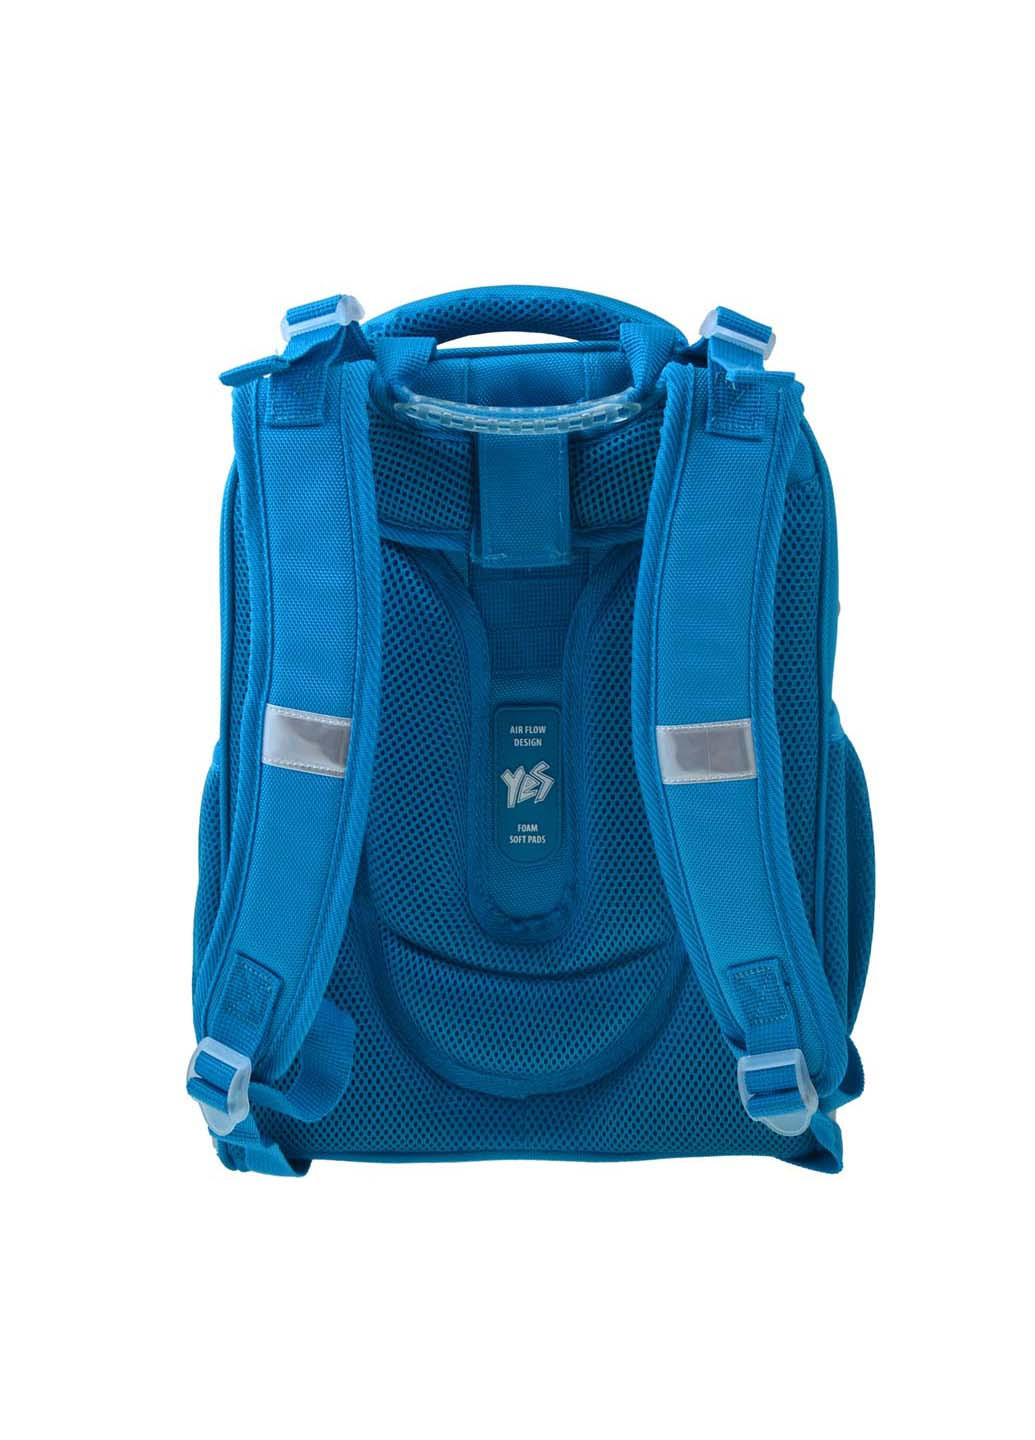 Рюкзак школьный каркасный H-12-1 Hearts turquoise Yes (260164005)